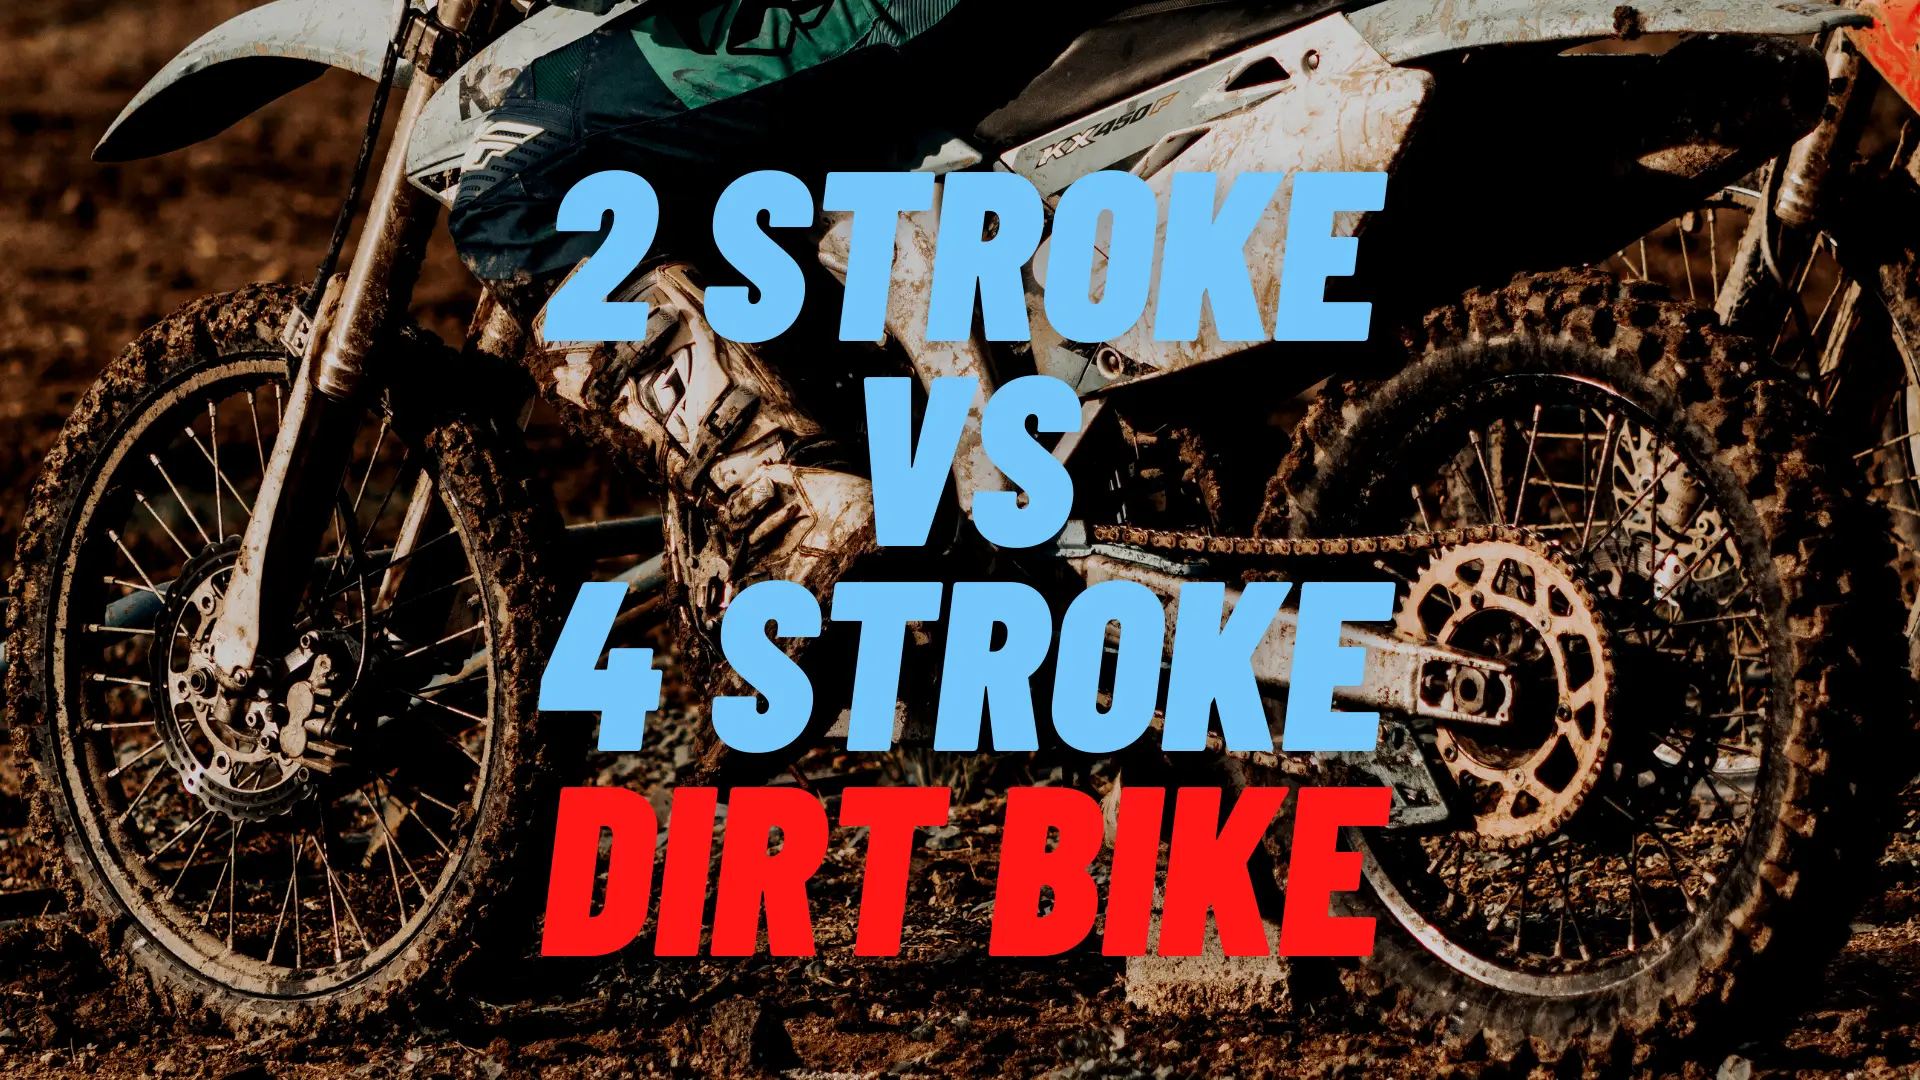 2-stroke vs 4-stroke dirt bikes